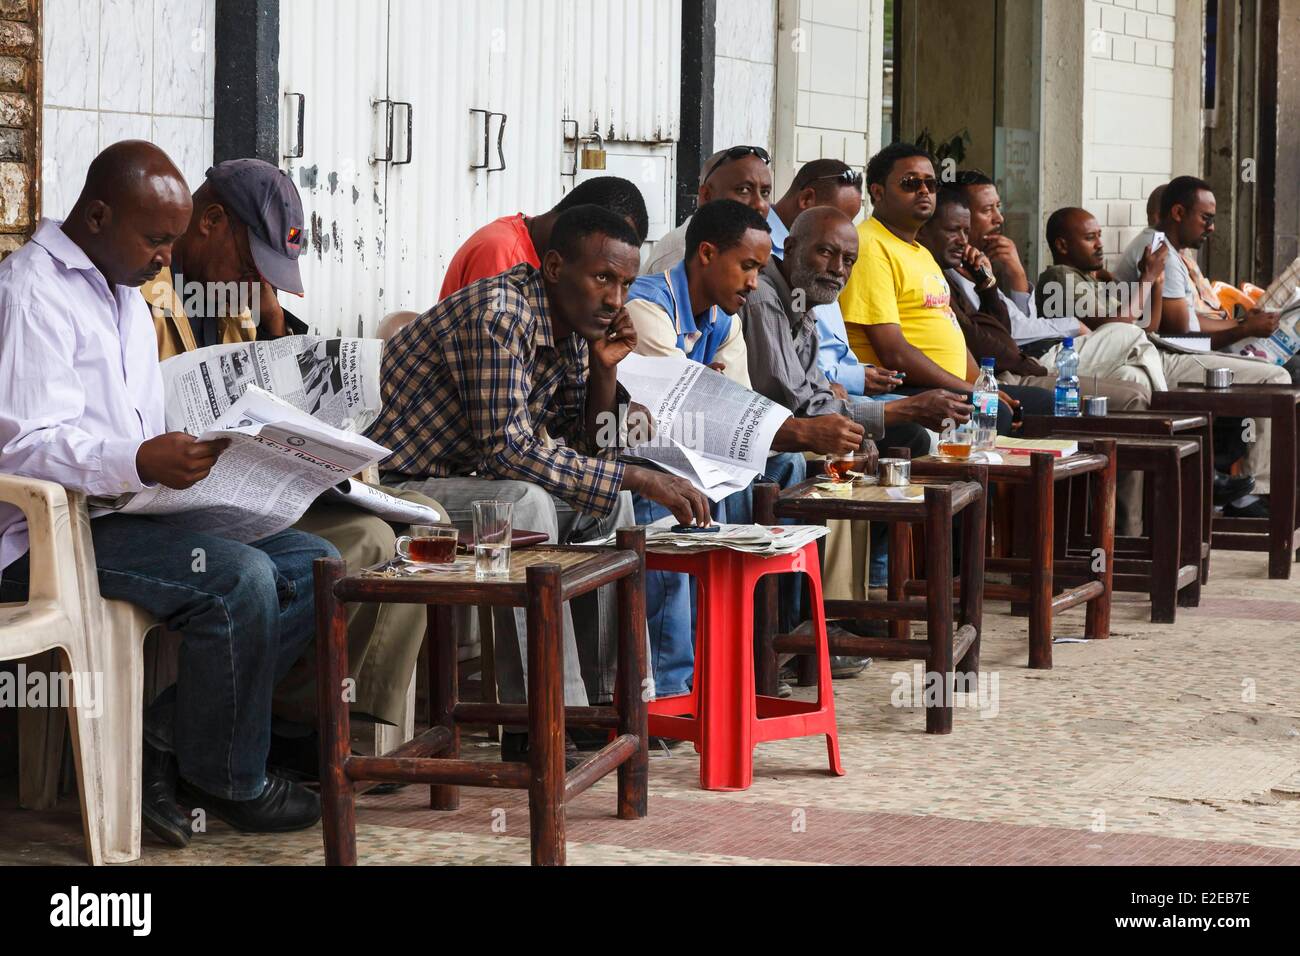 Ethiopia, Addis Ababa, cafe terrasse Stock Photo